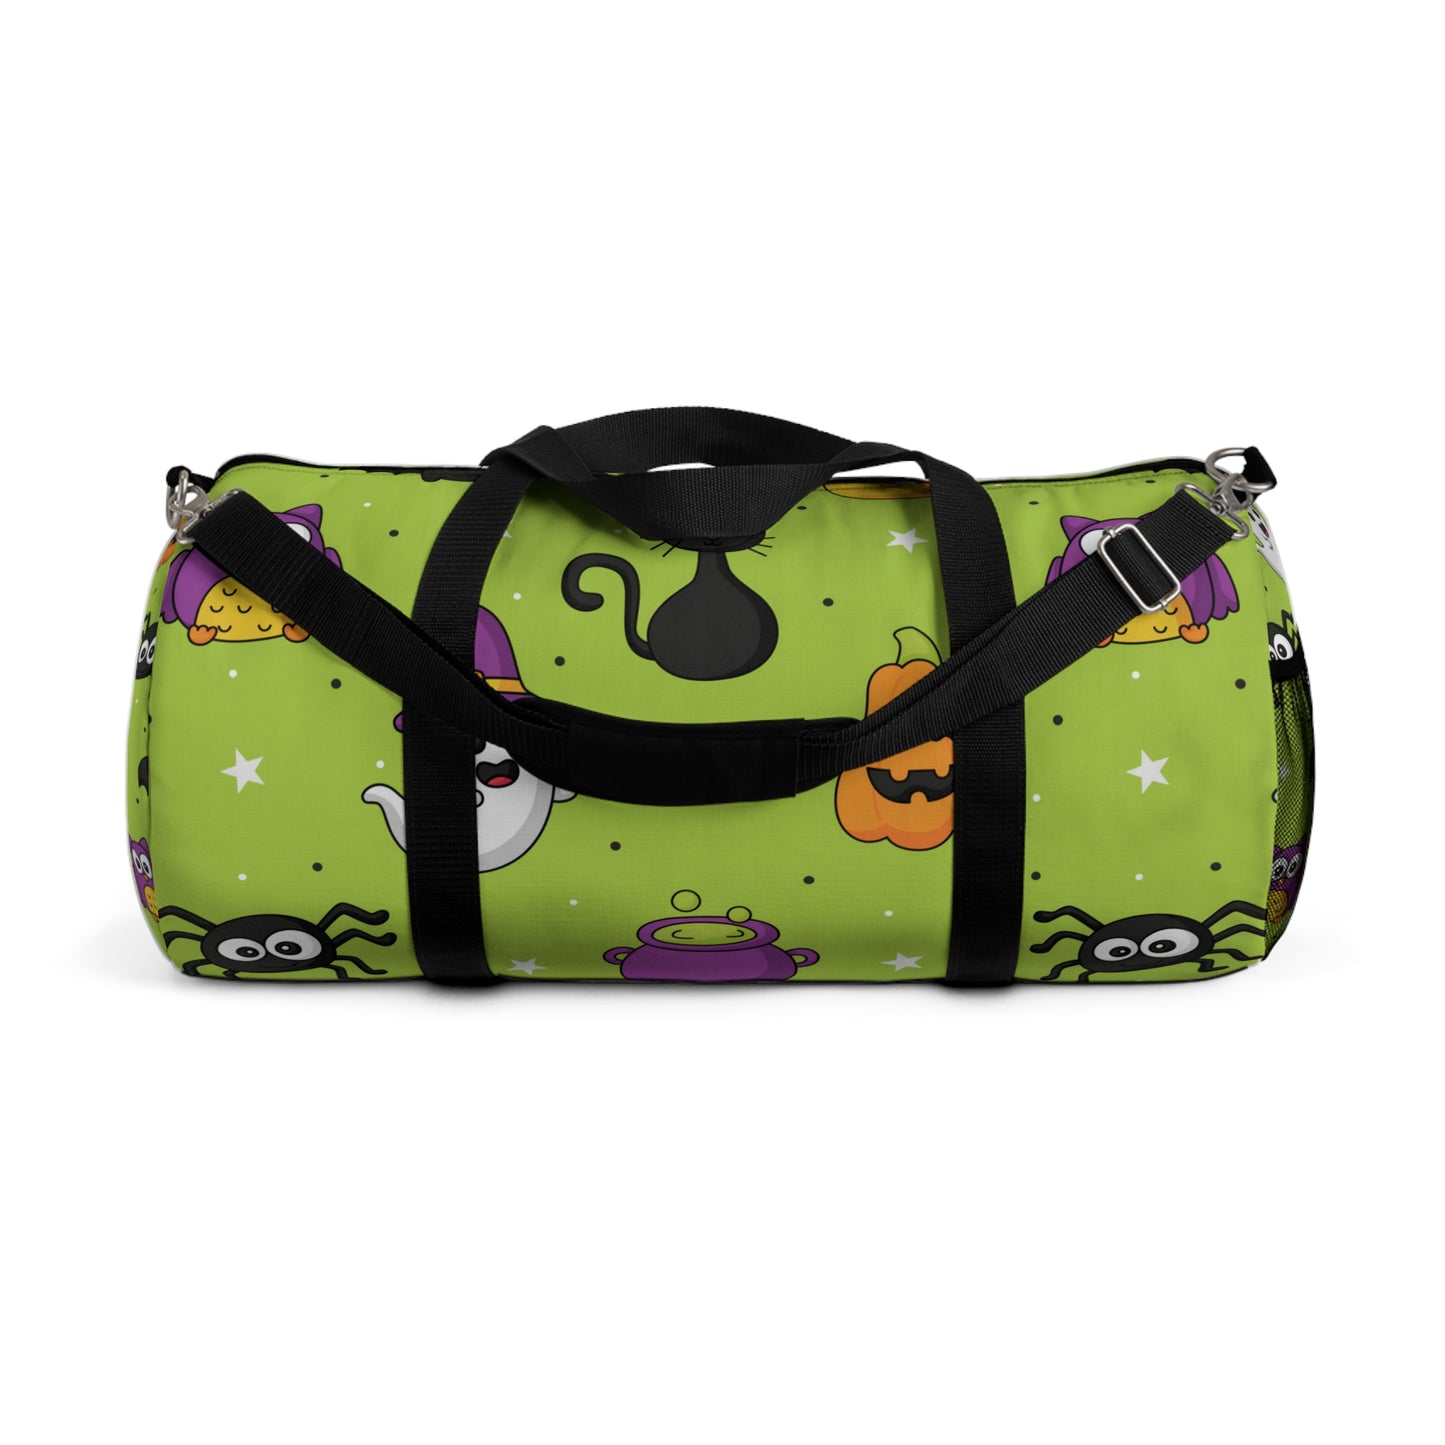 Scary Little Friends Duffel Bag